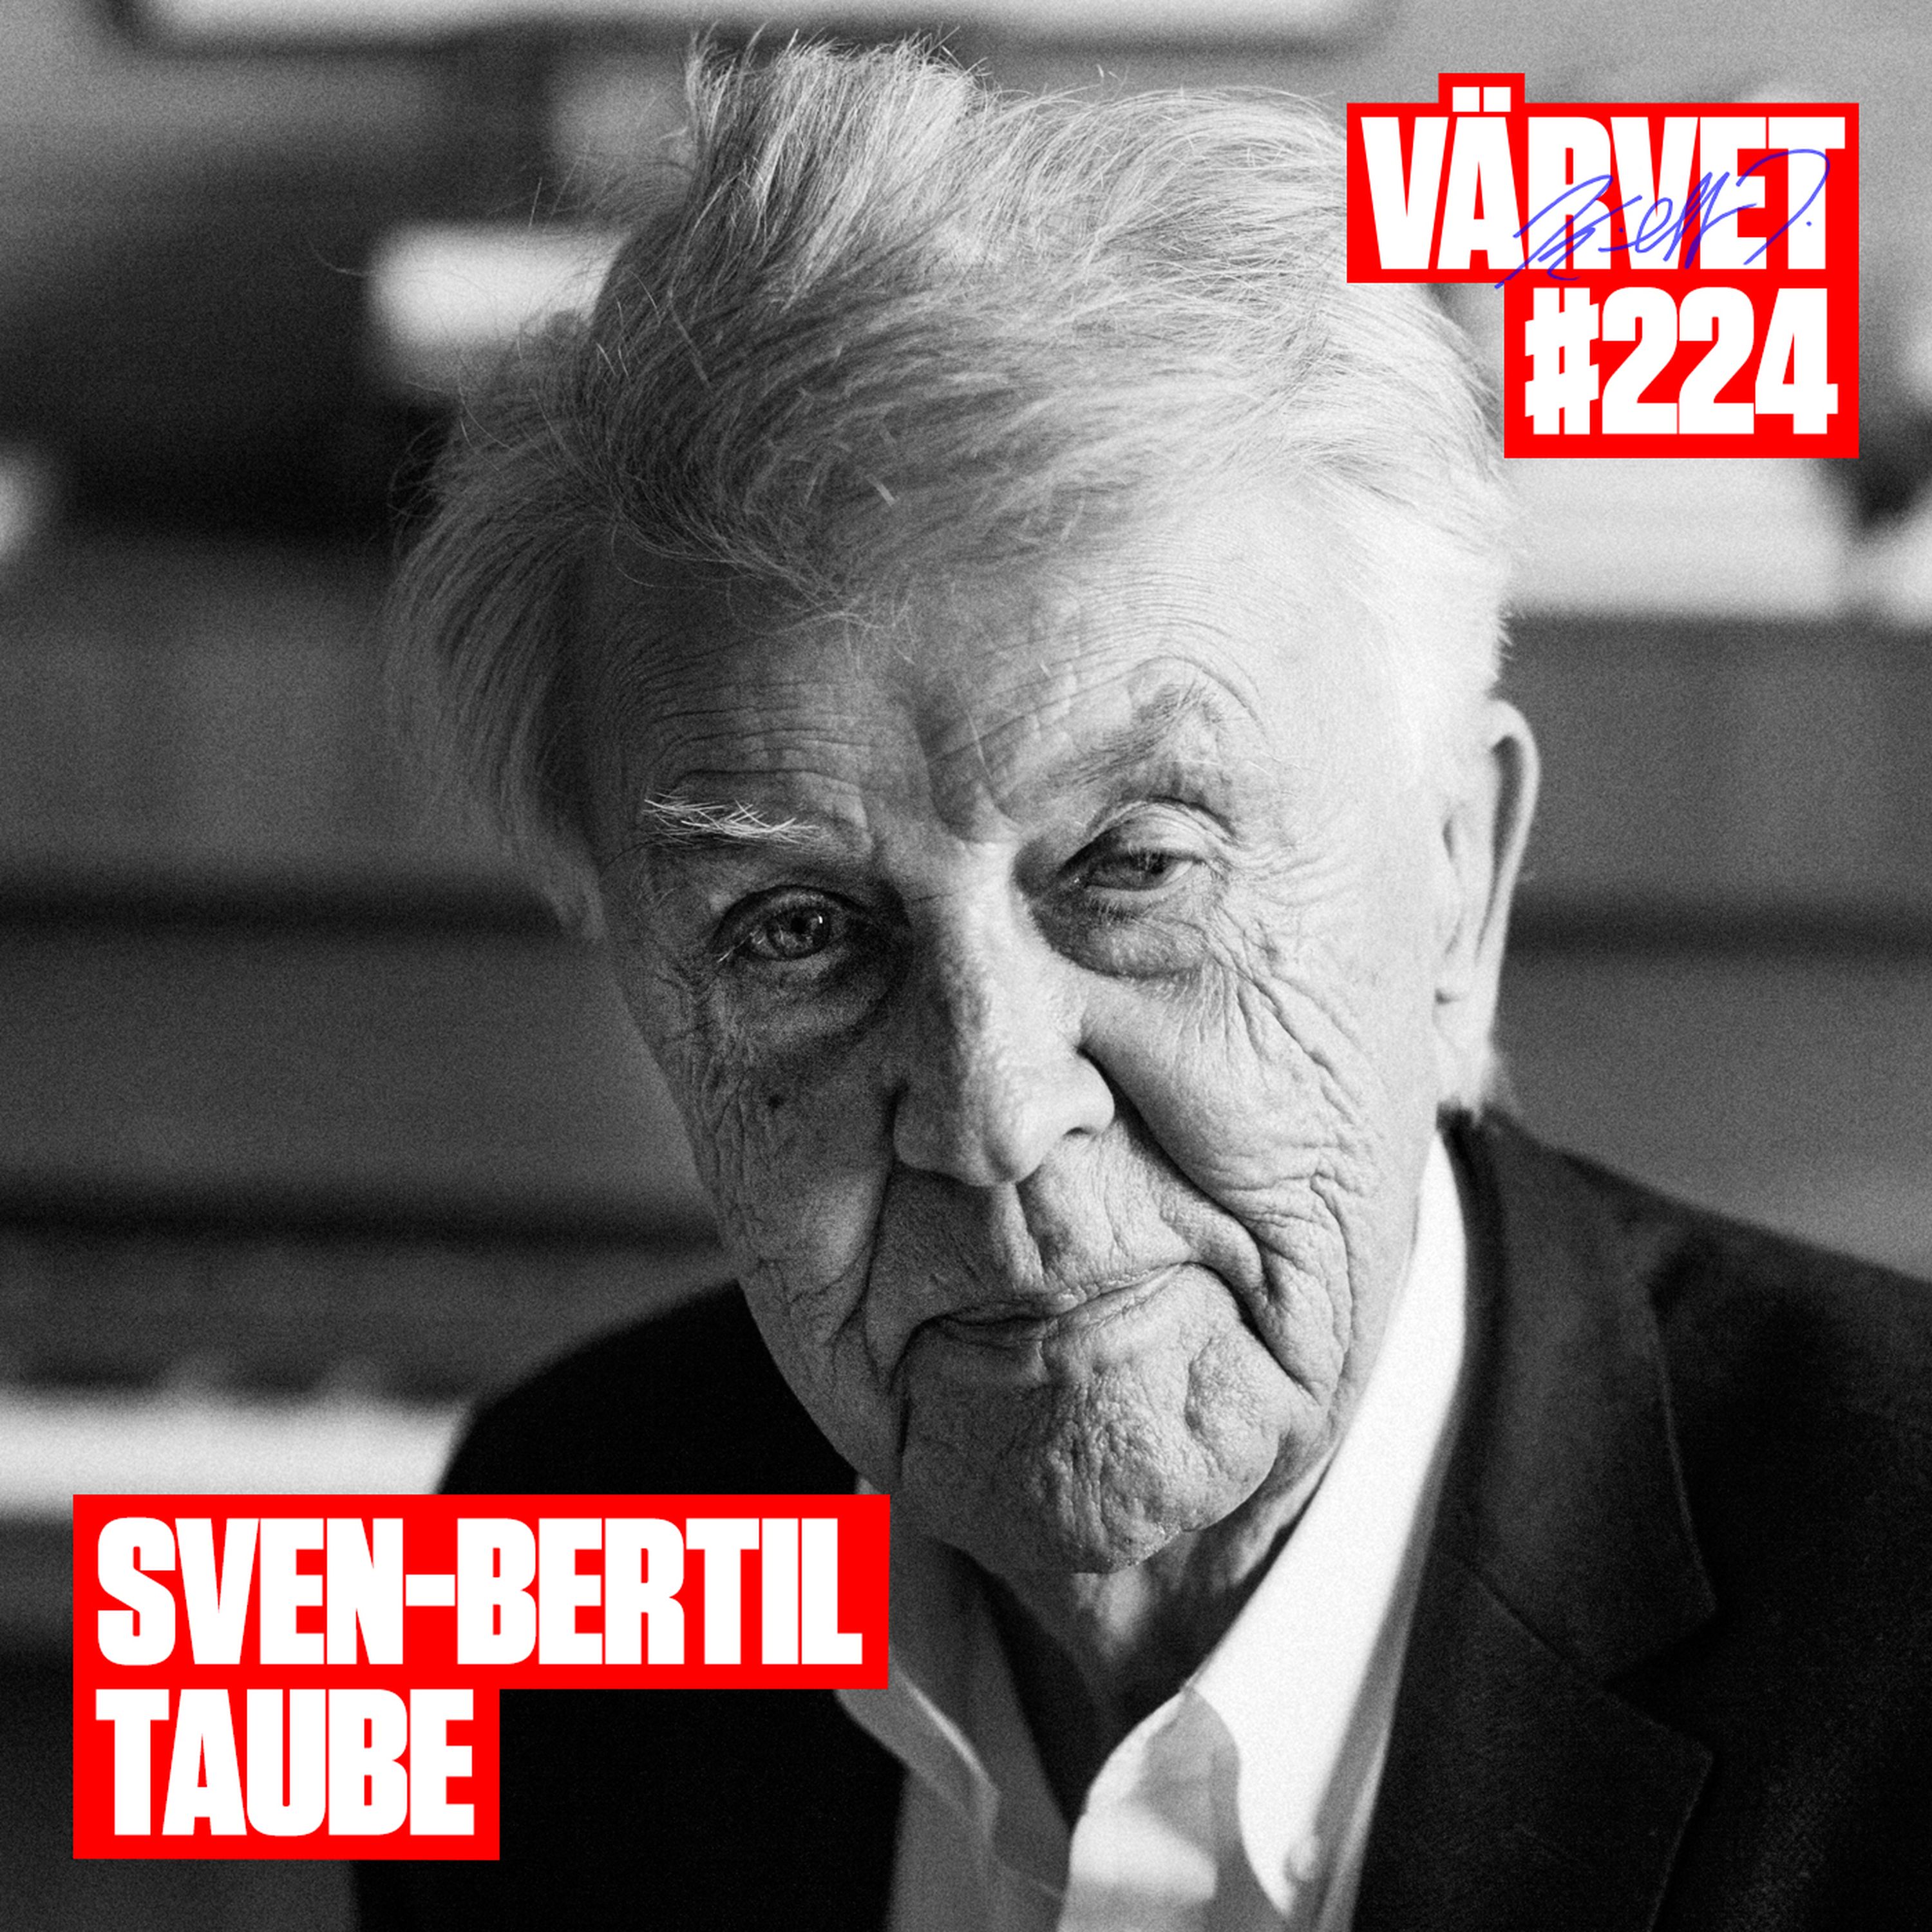 #224 Sven-Bertil Taube